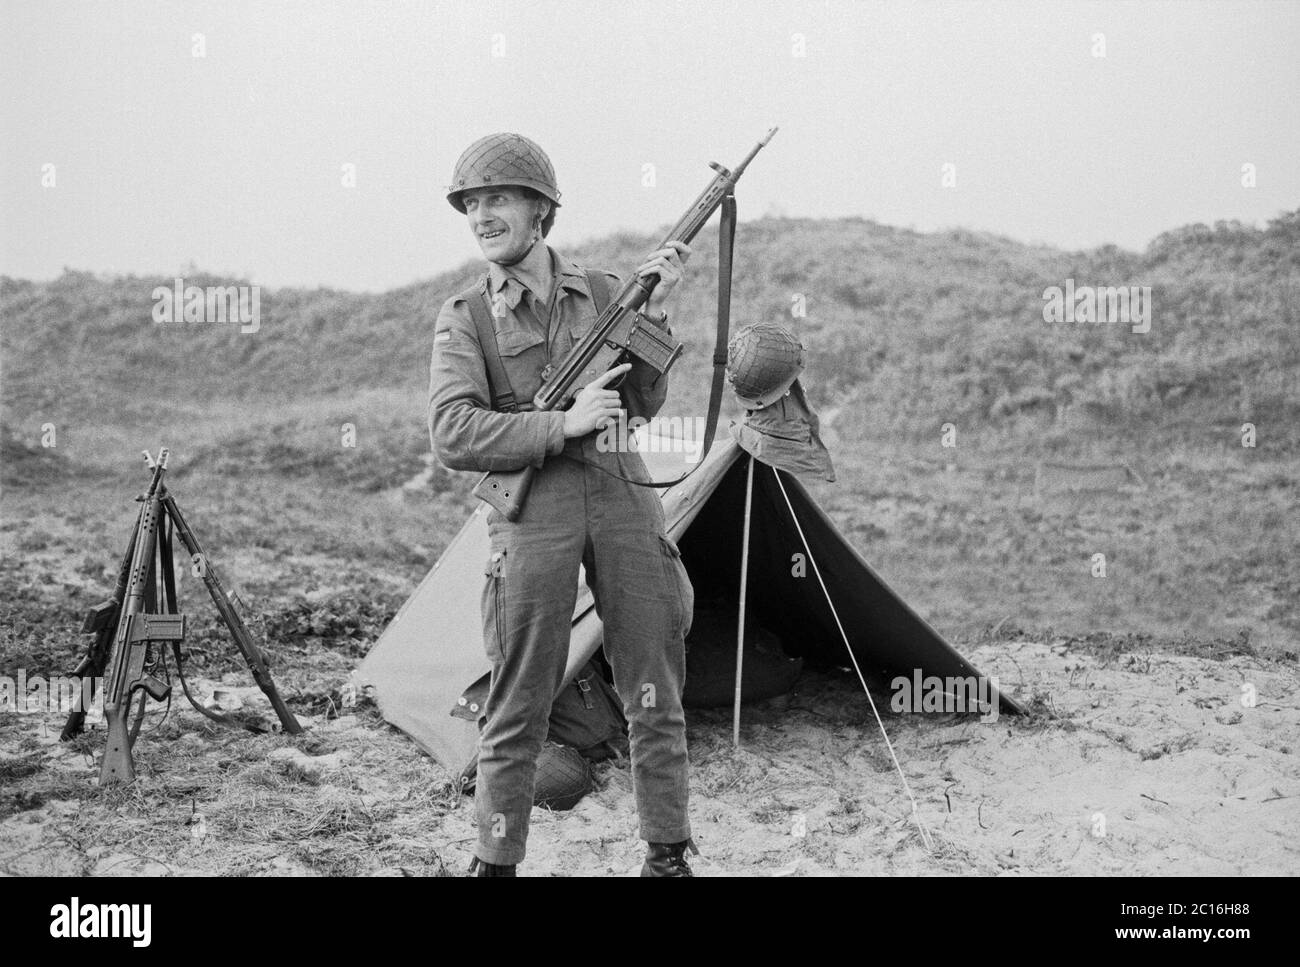 Soldat posant pour la photo, manœuvre de la marine, entraînement de base, septembre 1981, île de Borkum, Basse-Saxe, Allemagne Banque D'Images